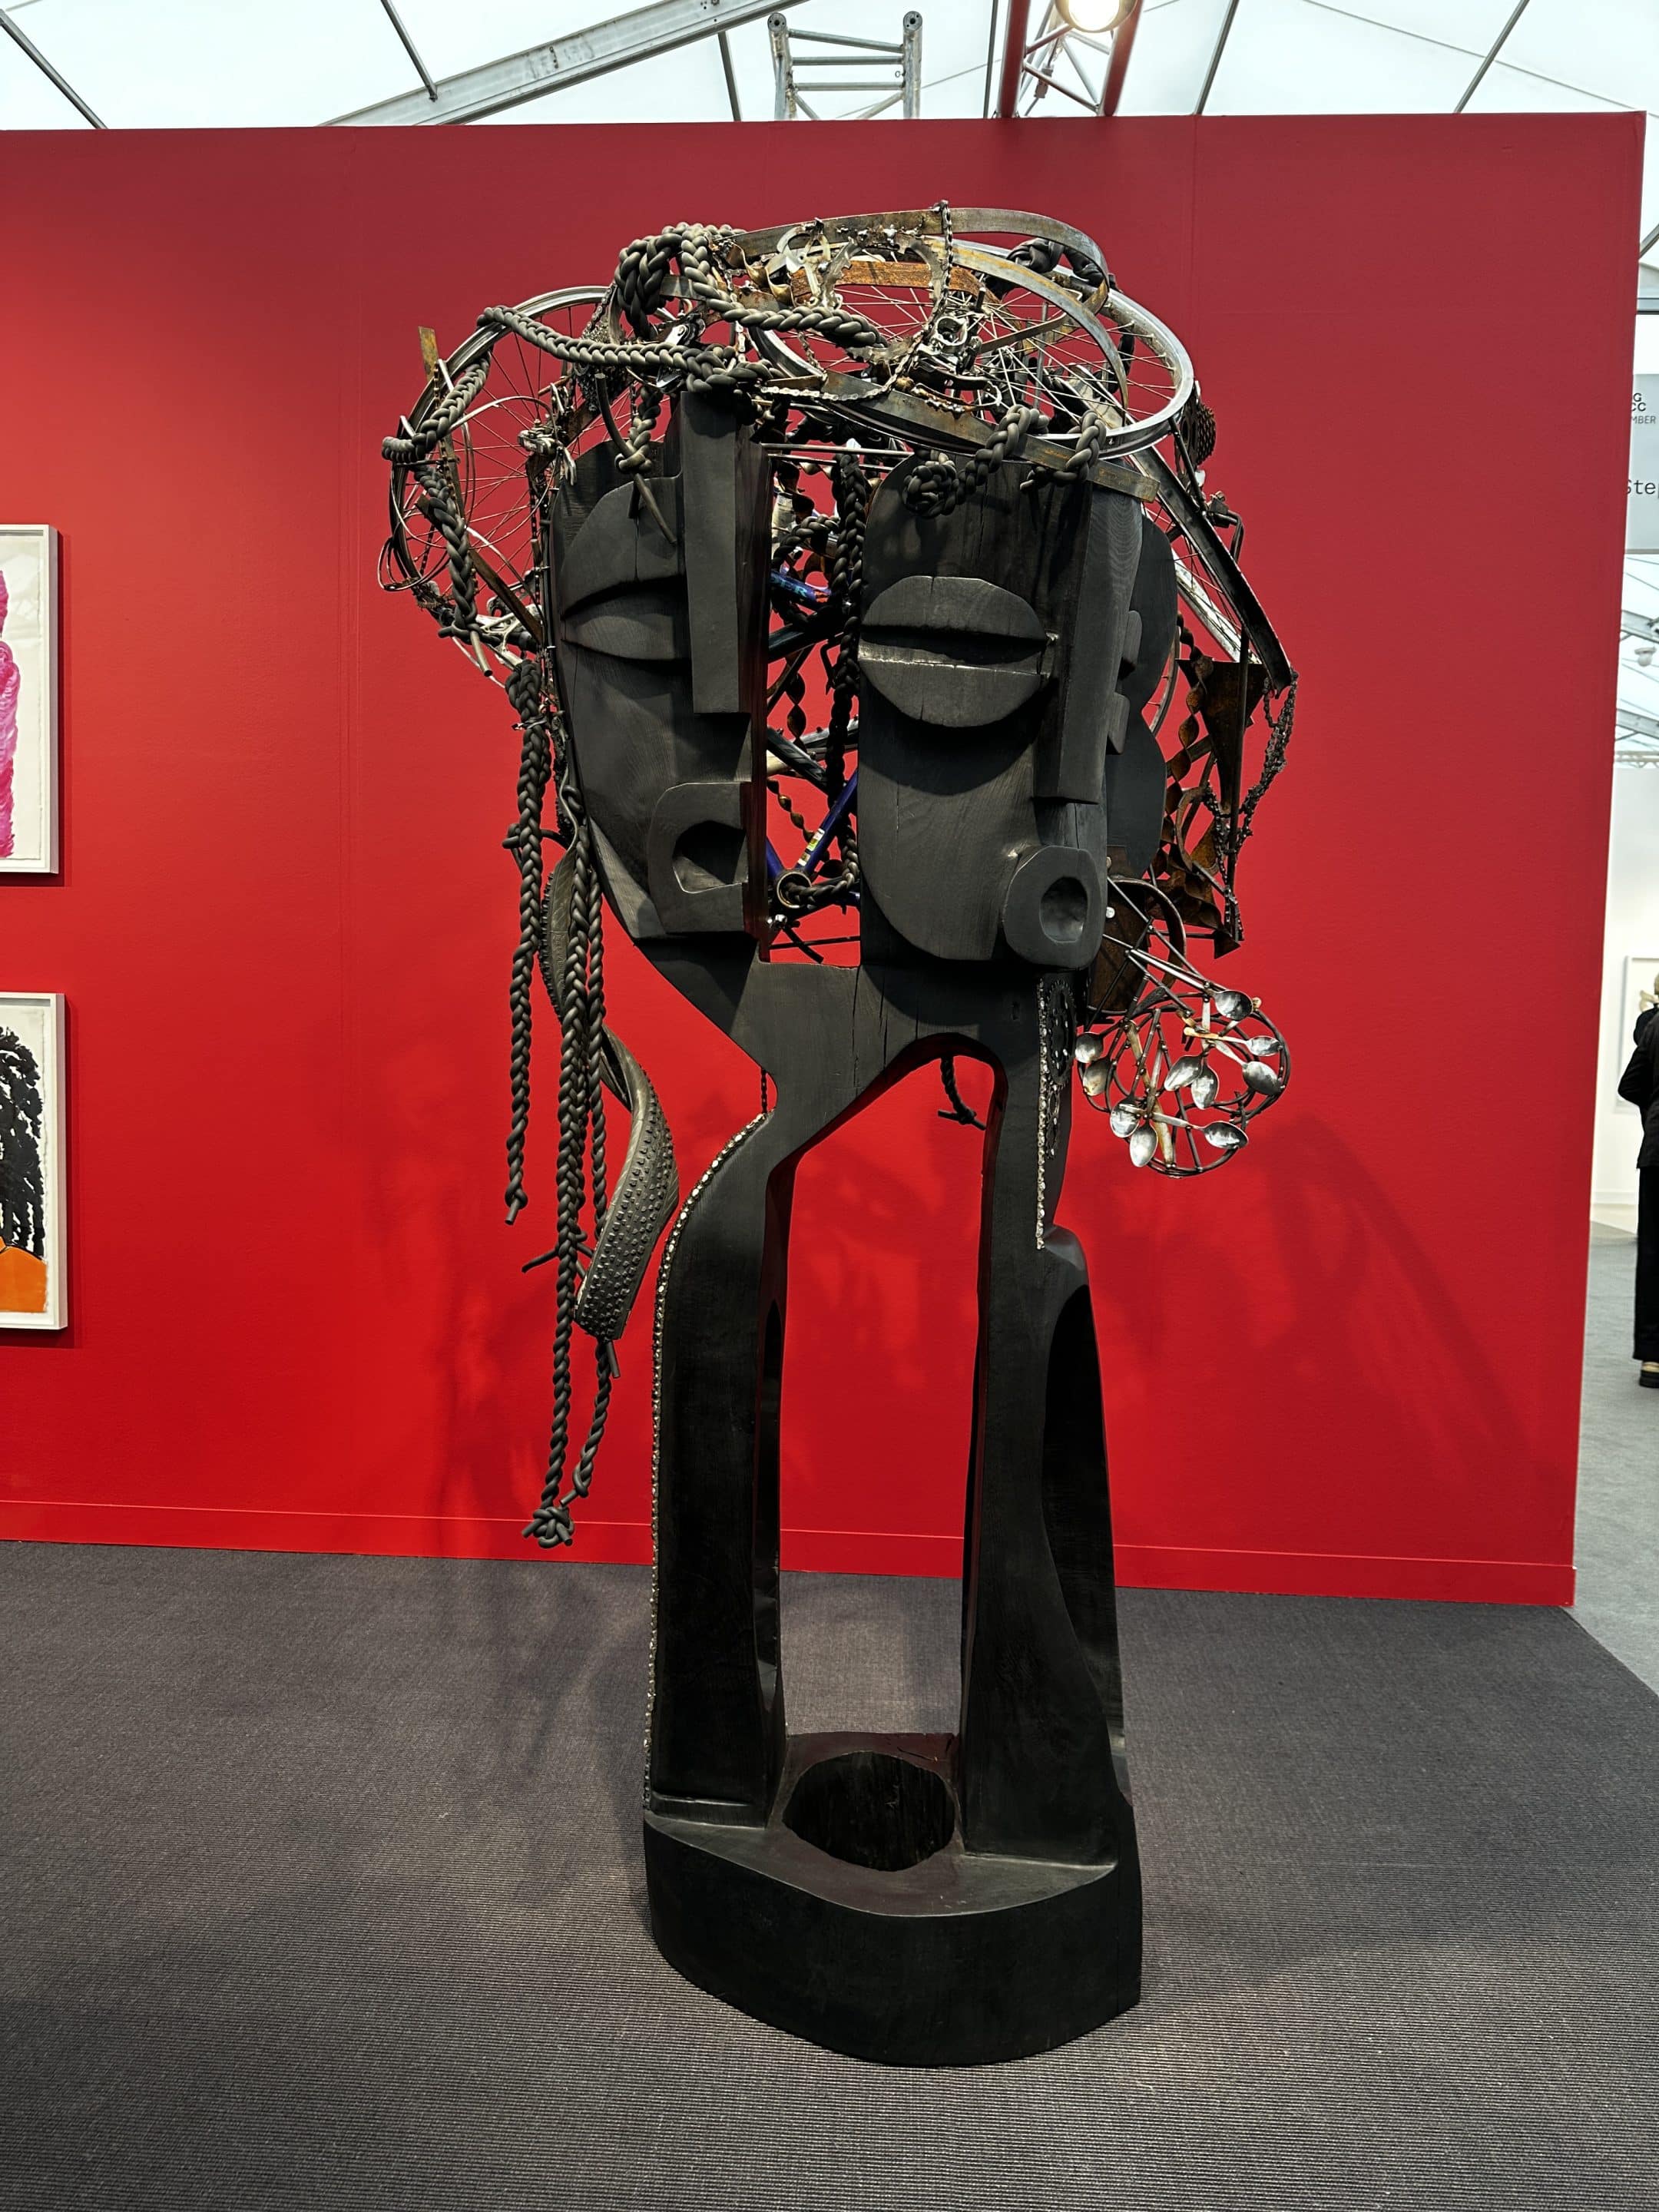 Leilah Babirye, Stephen Friedman Gallery